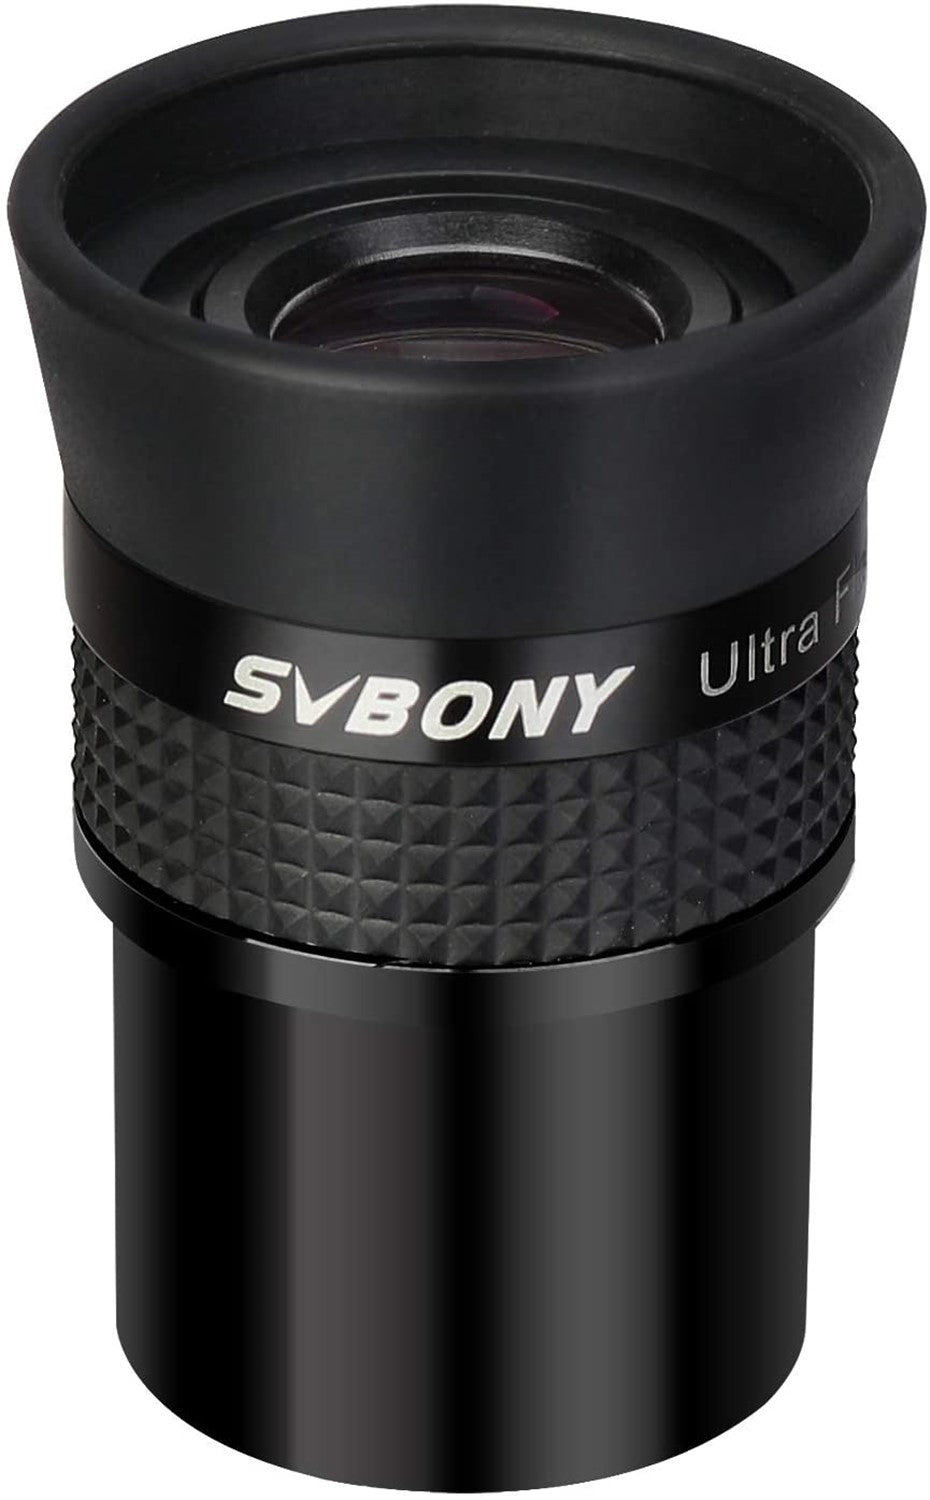 Svbony SV190 Ultra Flat Field Eyepiece10mm, 1.25